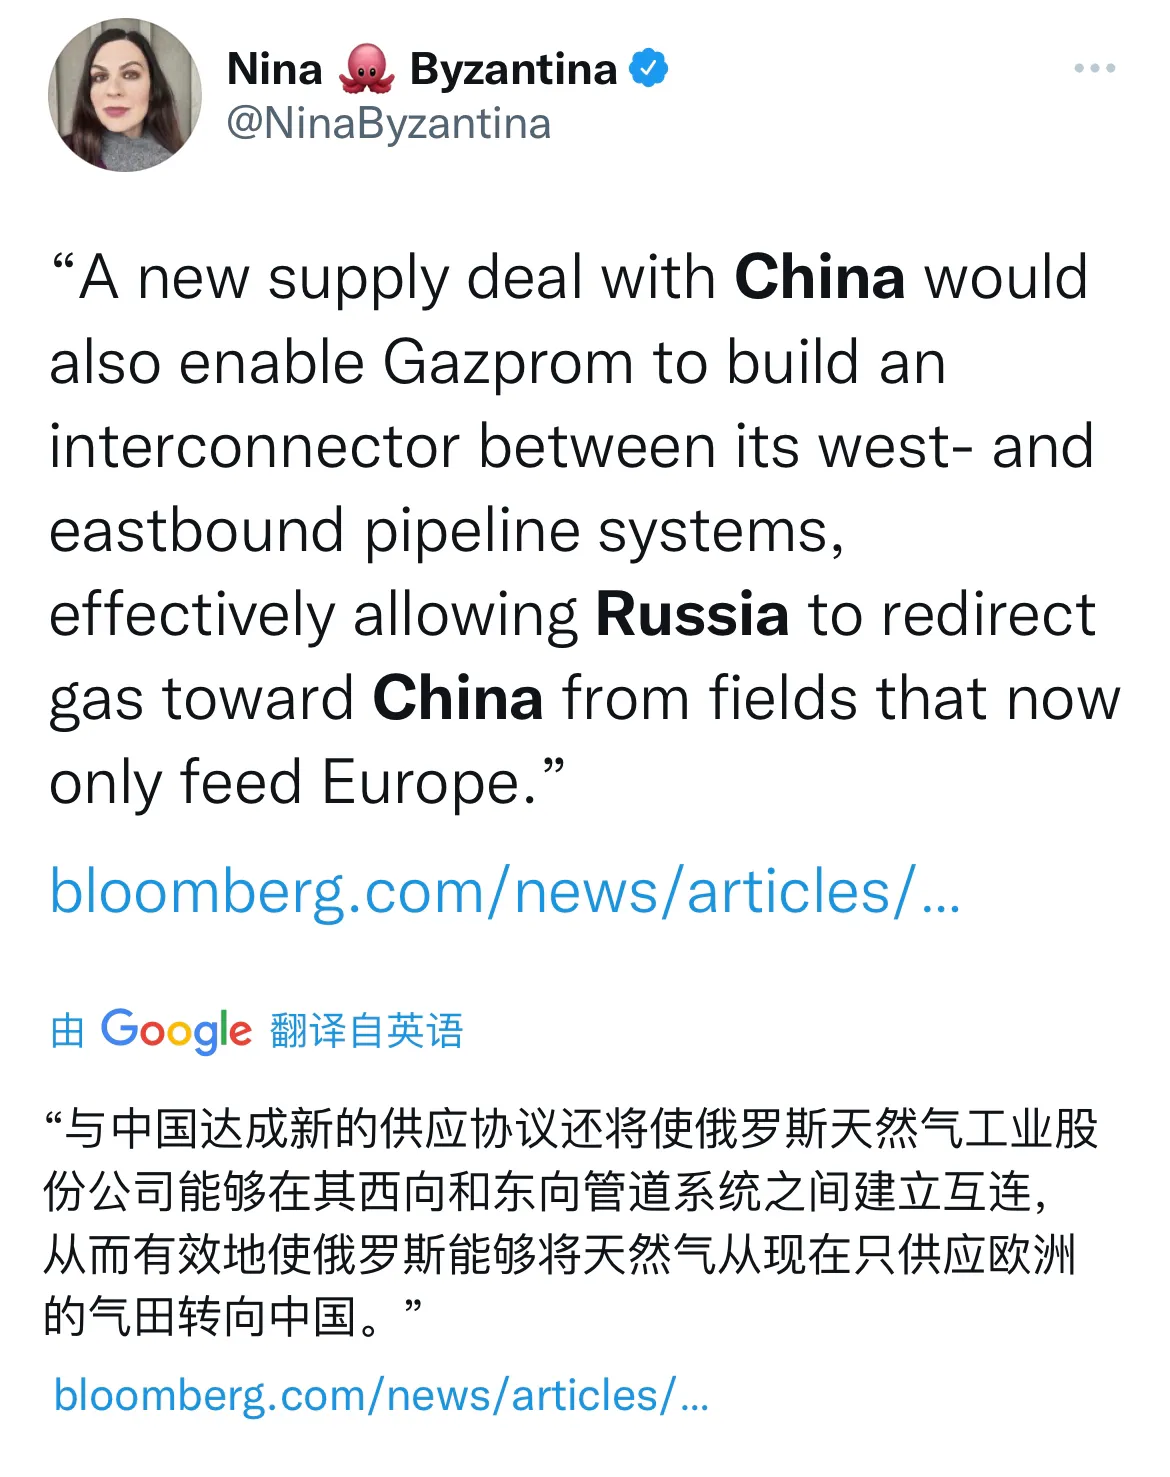 西方制裁将让俄罗斯和中国展开更多能源合作，甚至在价格上打折